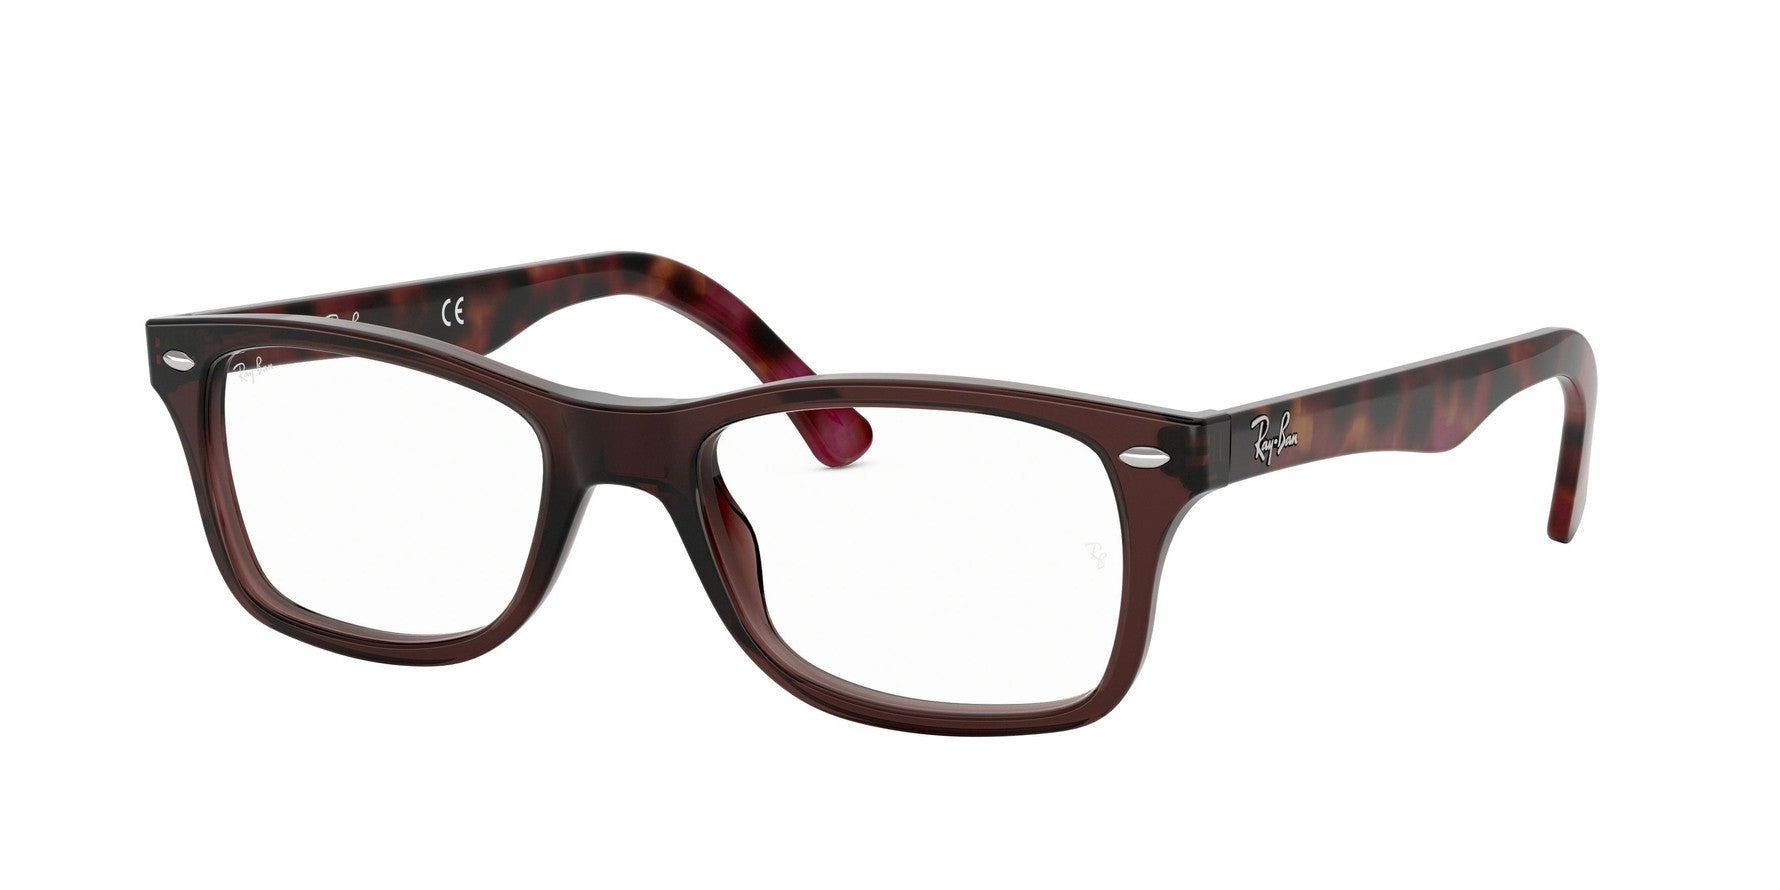 Ray-Ban Unisex's RX5228 Prescription Eyewear Frame